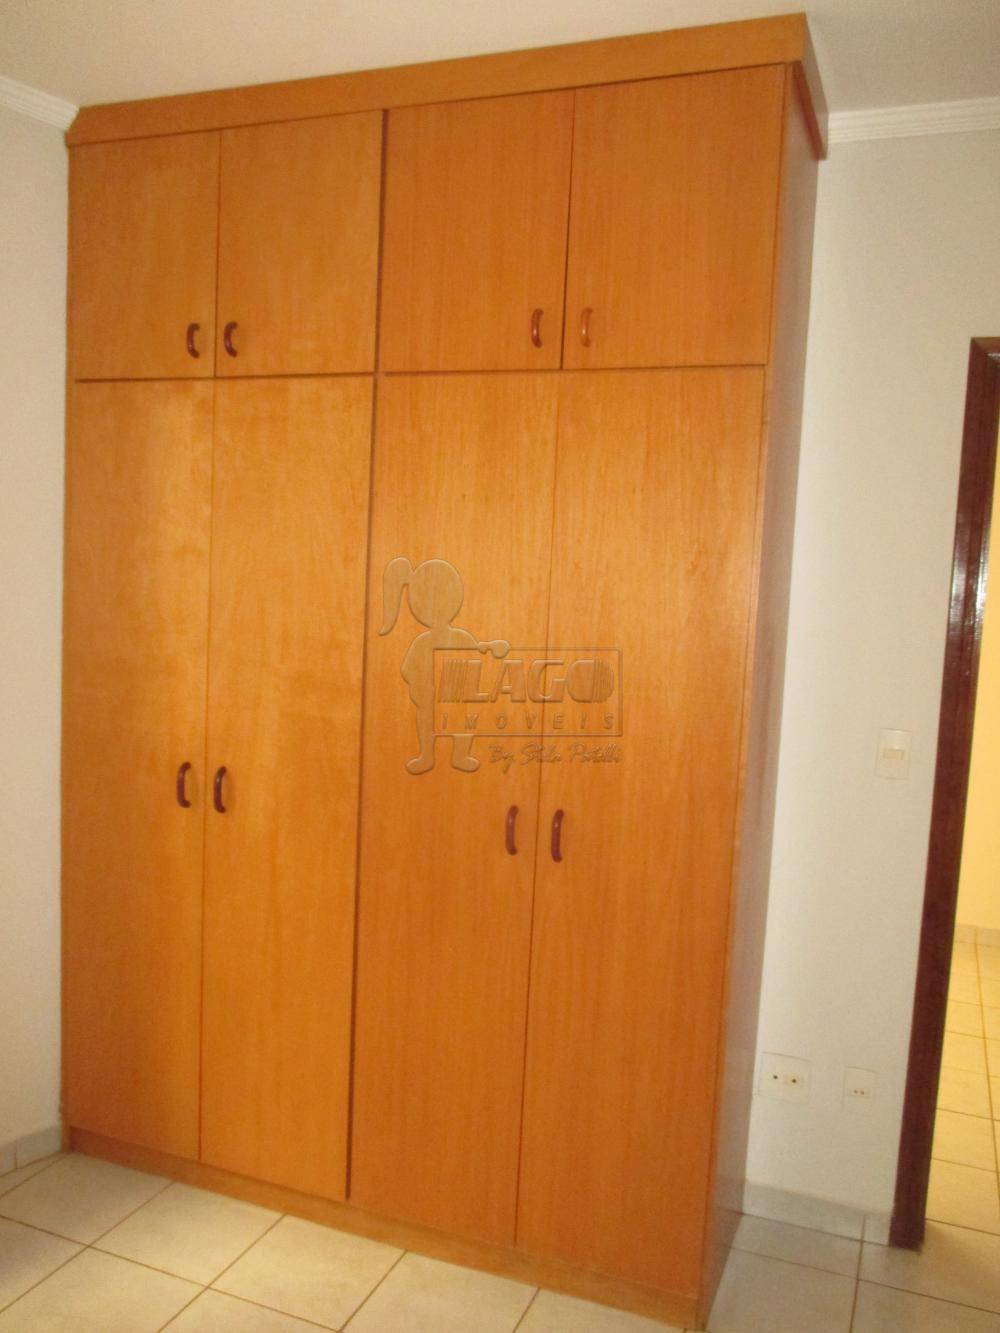 Alugar Apartamento / Padrão em Ribeirão Preto R$ 550,00 - Foto 8